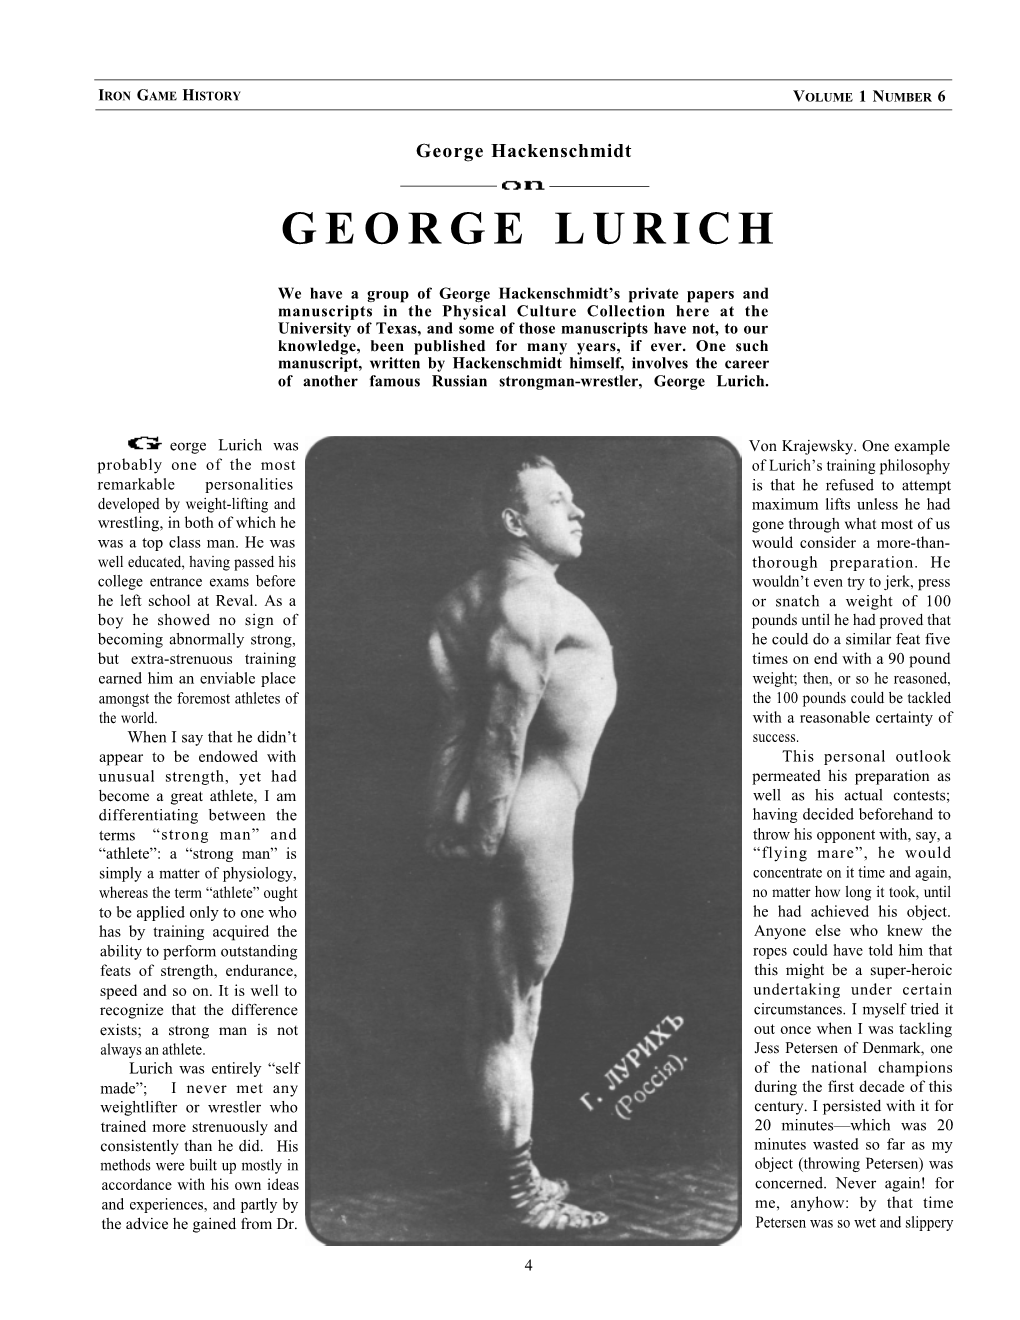 George Hackenschmidt on George Lurich